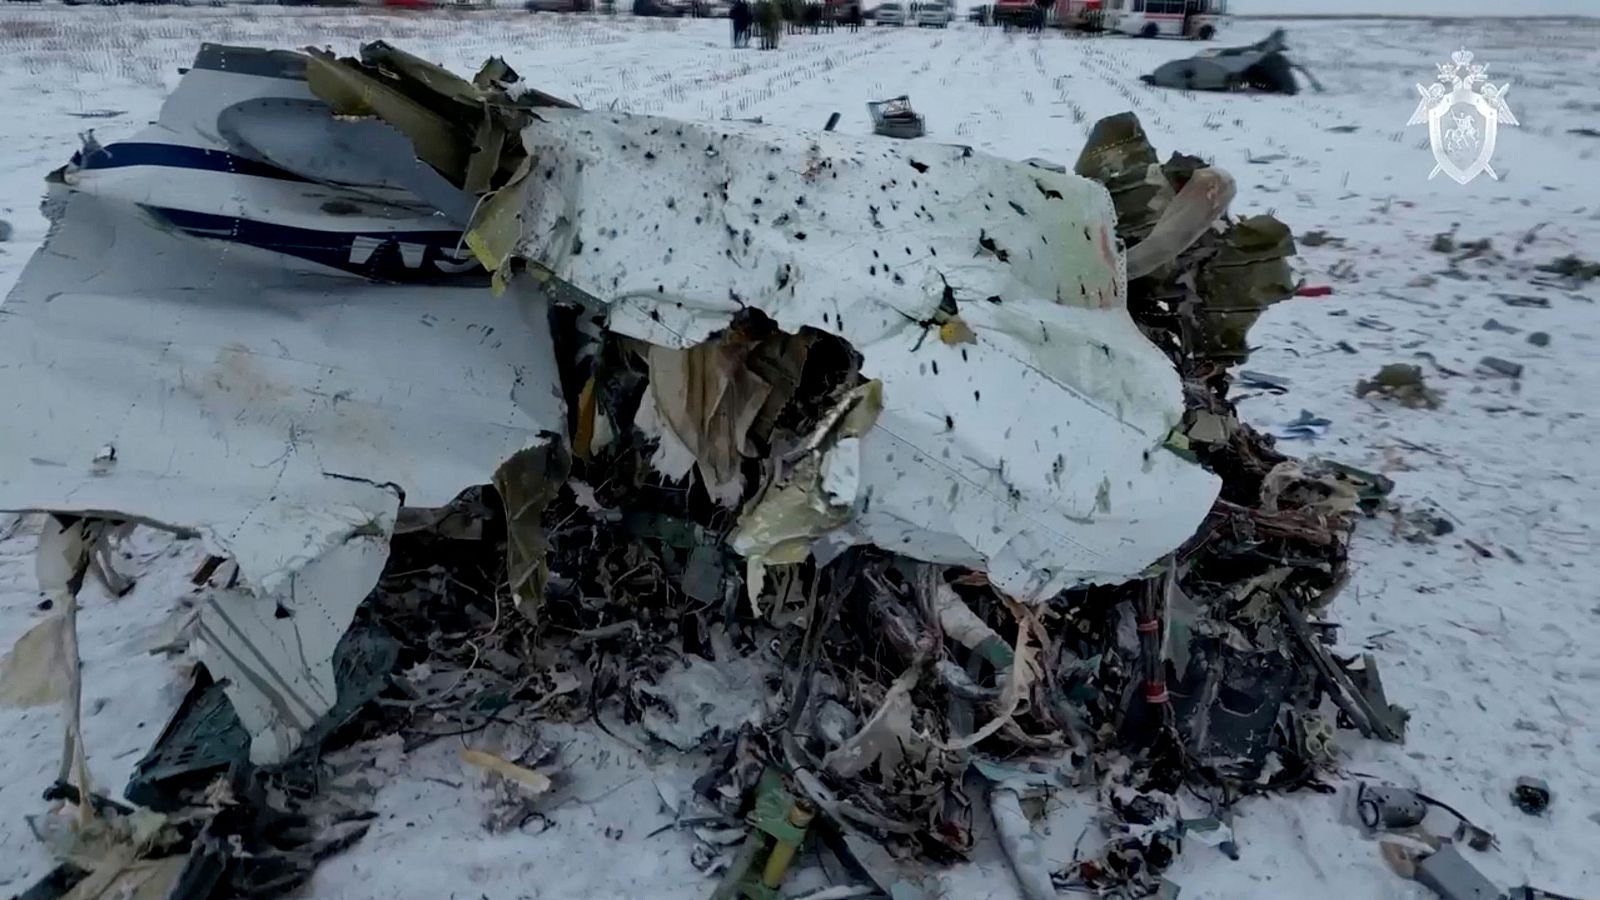 Escombros del avión de transporte Ilyushin Il-76 accidentado cerca de la aldea de Yablonovo, región de Bélgorod, Rusia